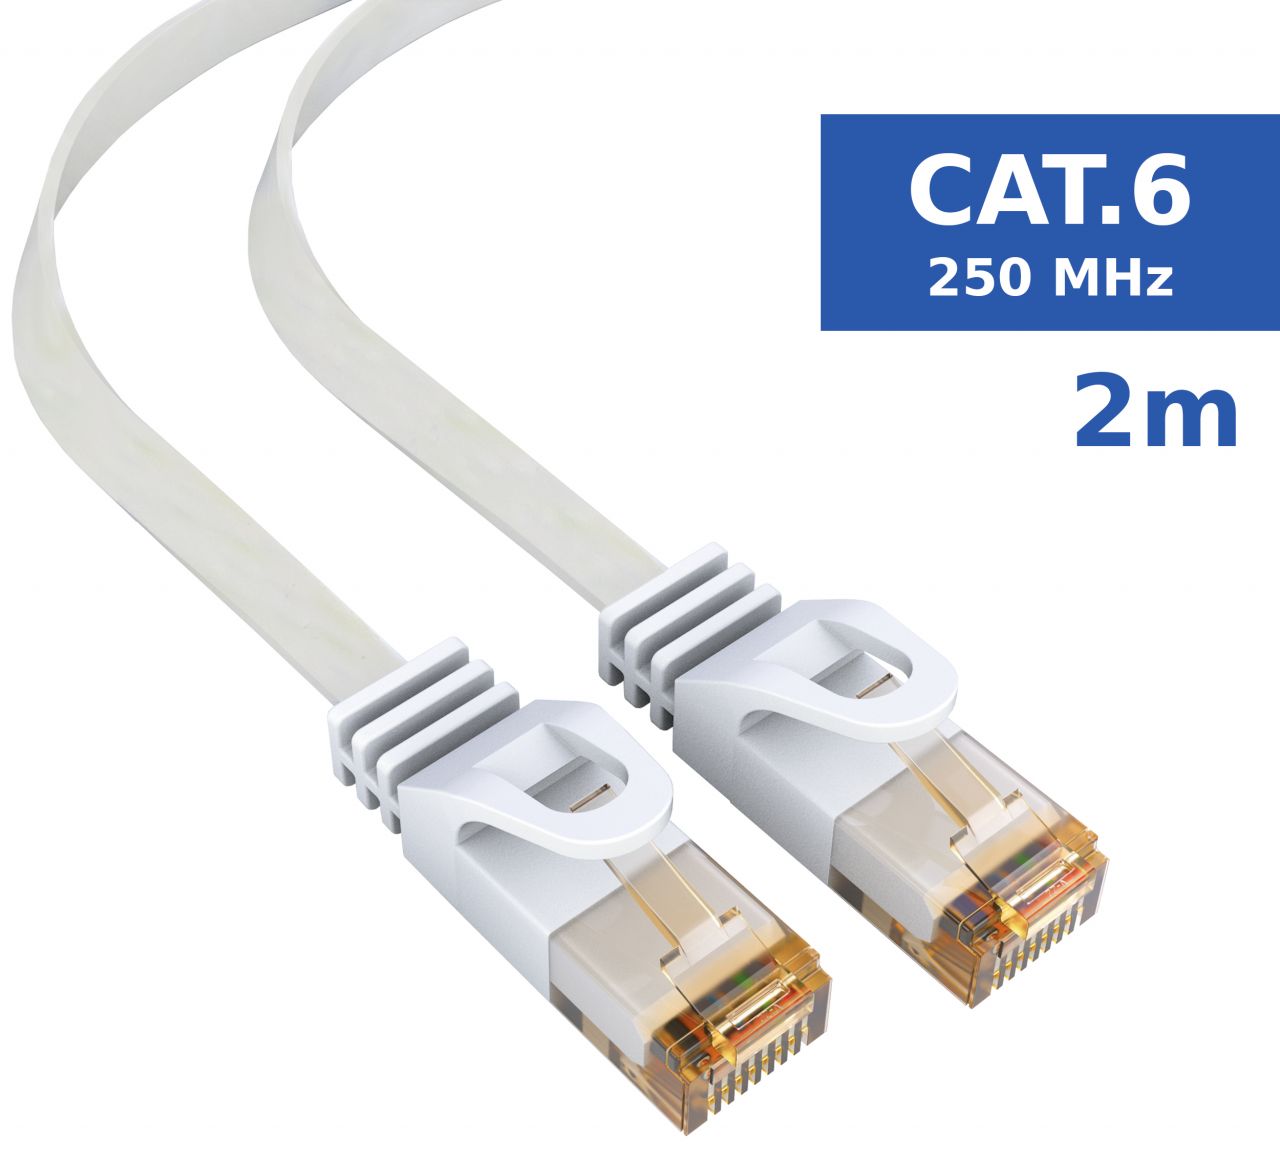 mumbi 2m CAT 6 Netzwerkkabel Flachkabel Patchkabel Kabel LAN DSL RJ45 schwarz 